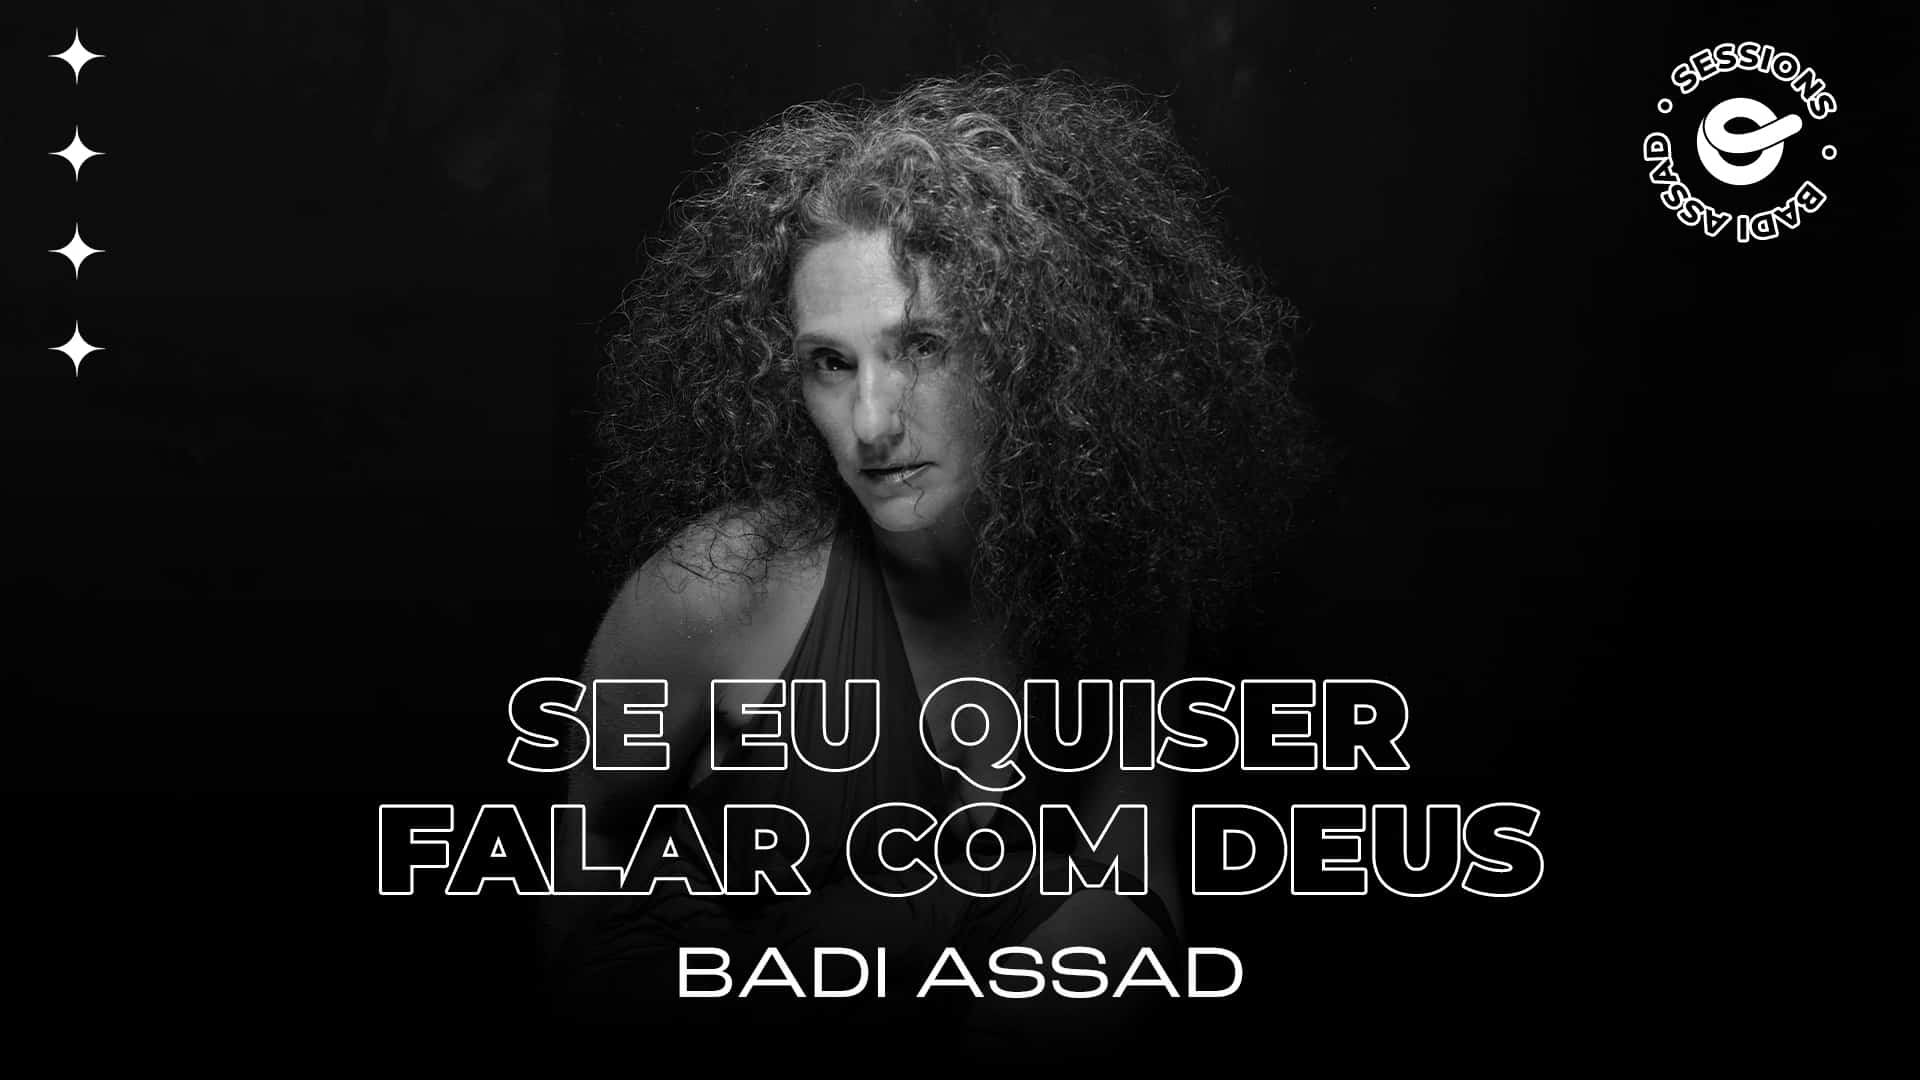 revistaprosaversoearte.com - Badi Assad apresenta sua versão de clássico de Gilberto Gil